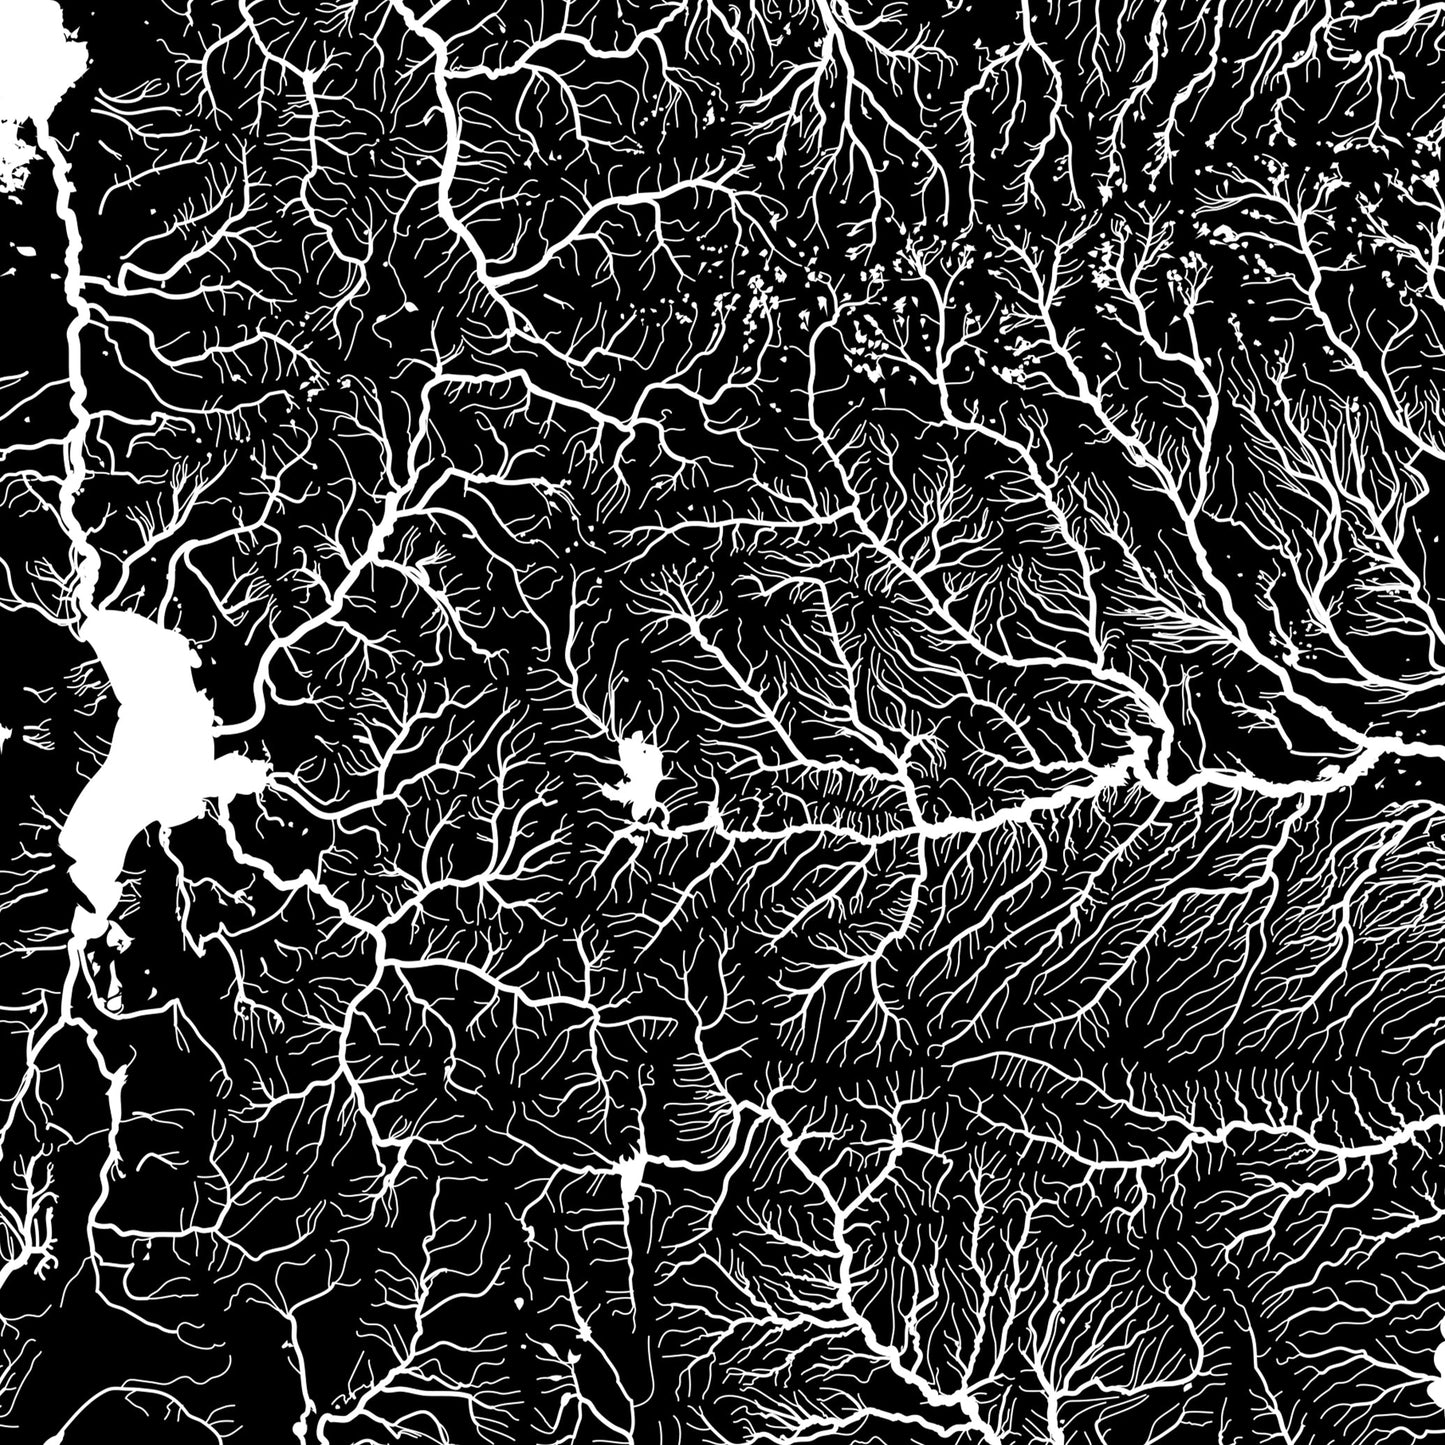 Utah Hydrological Map